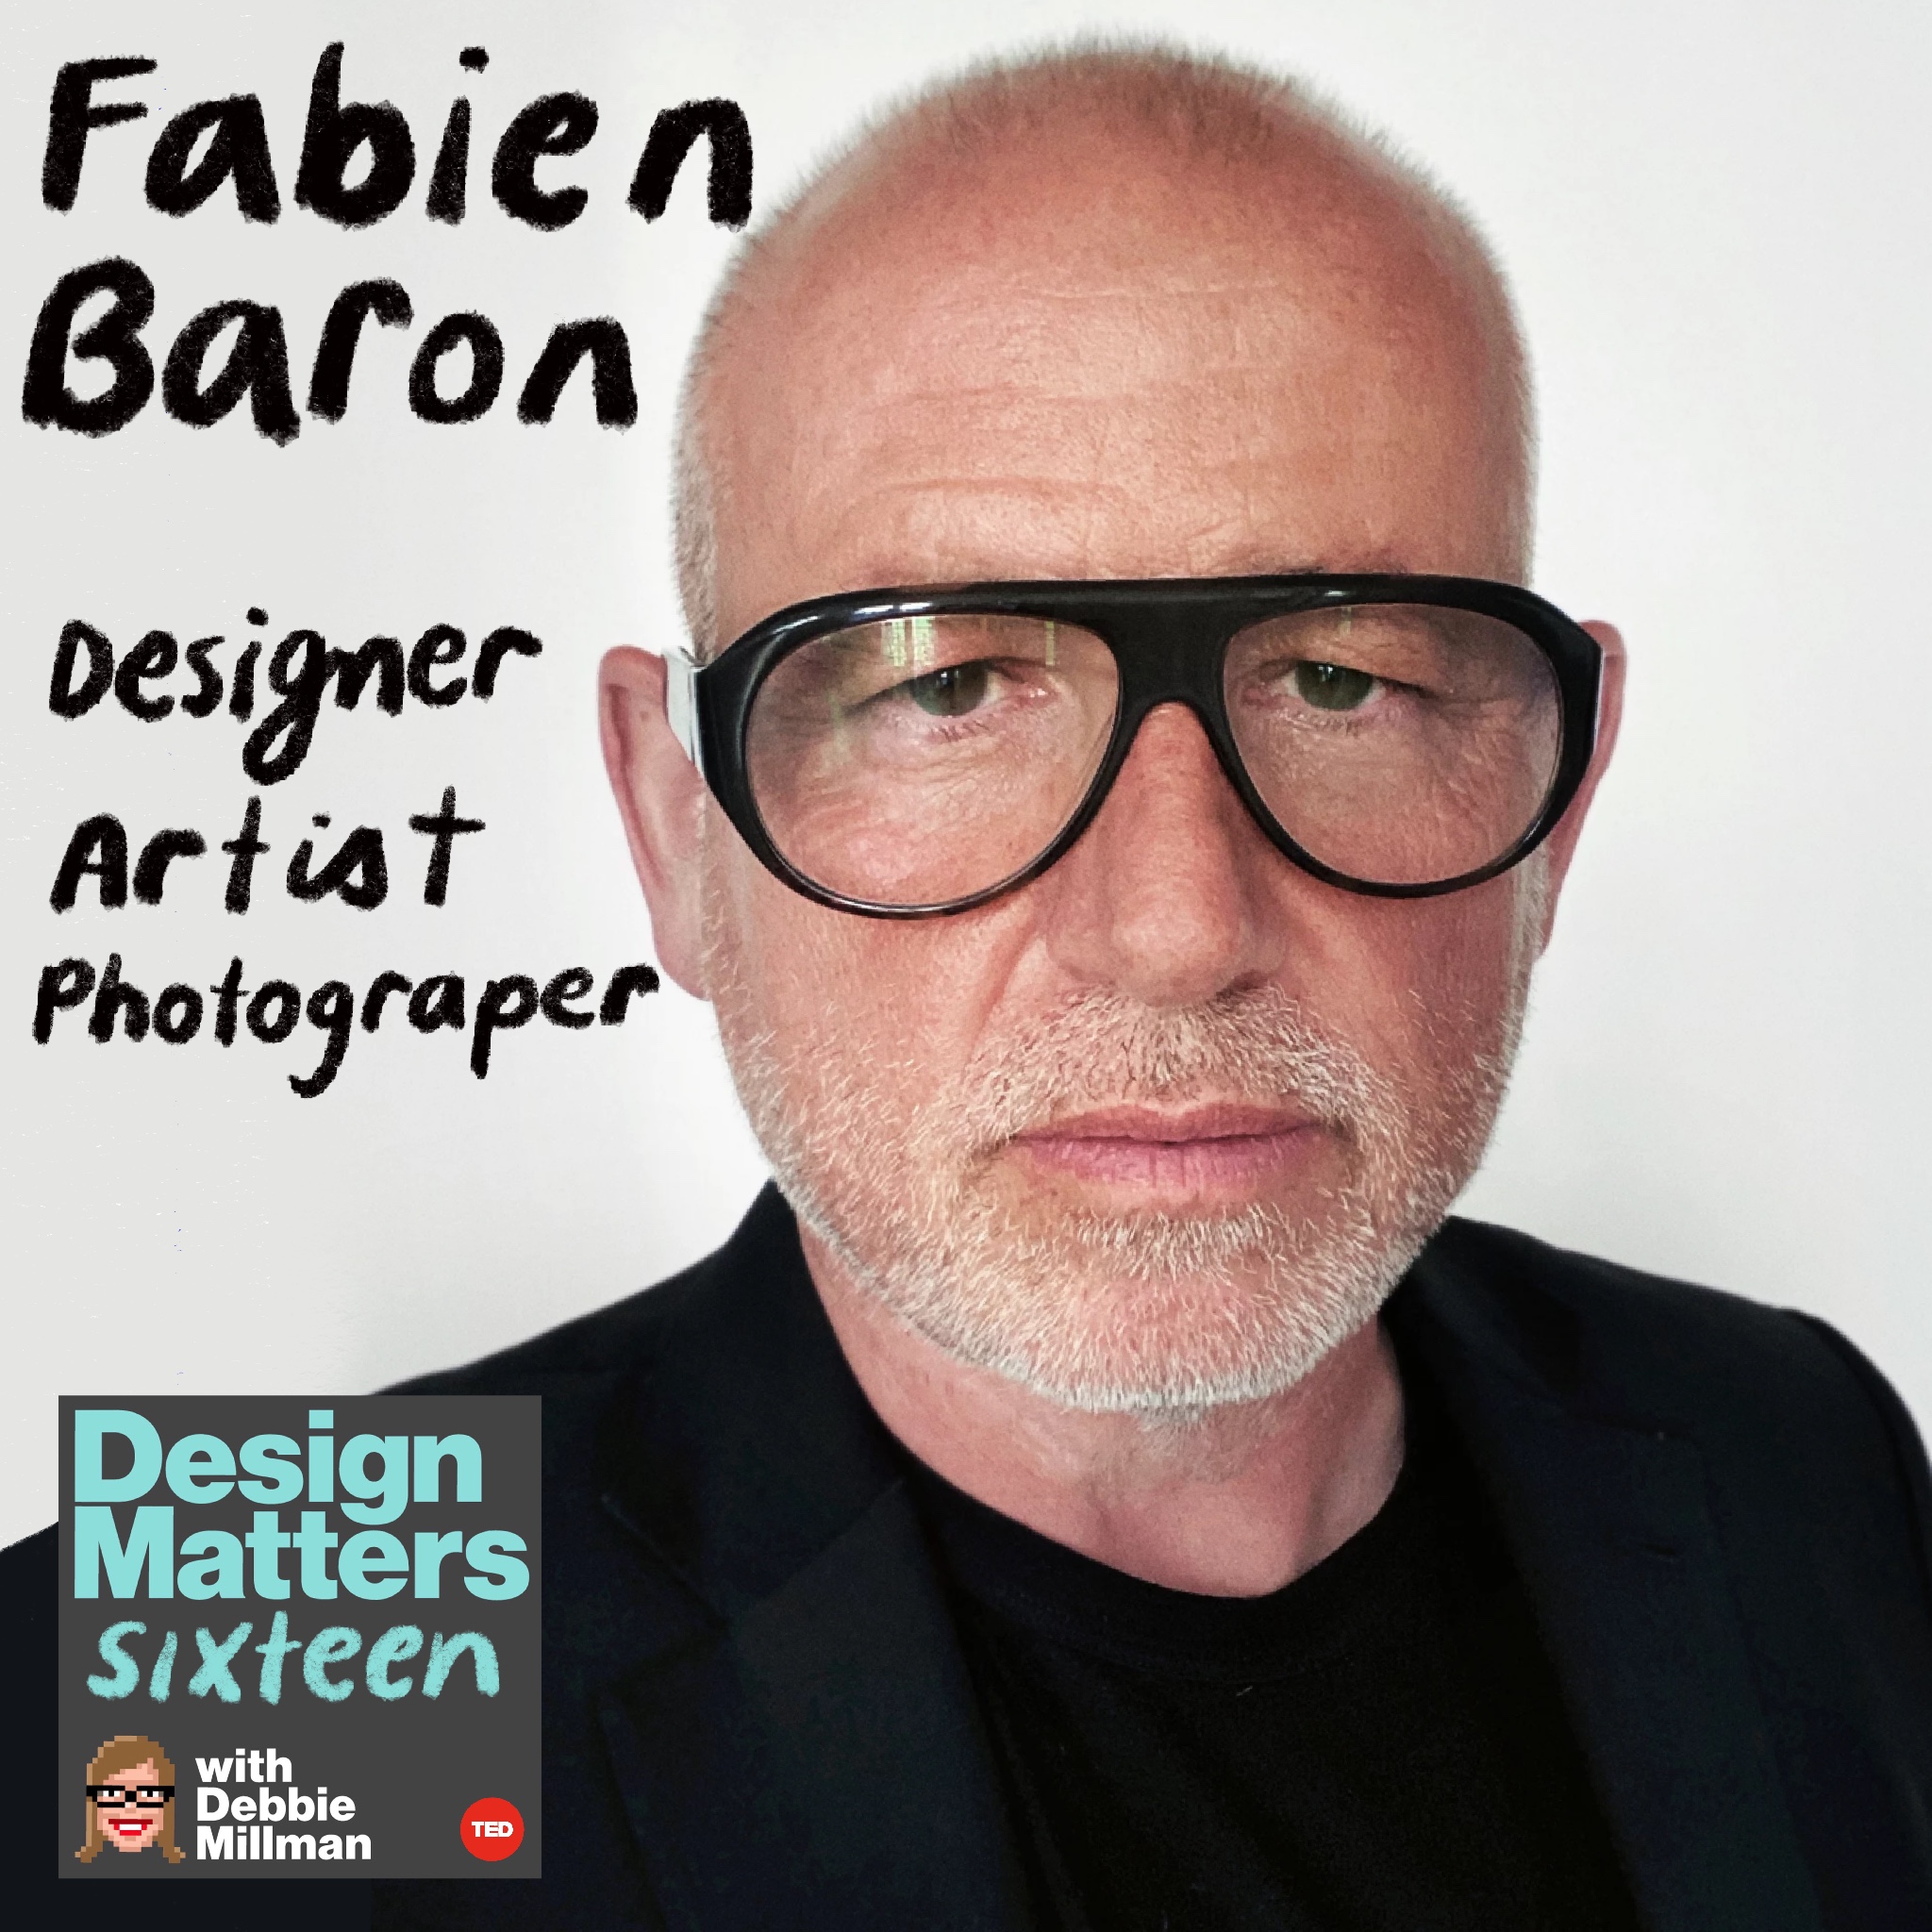 Fabien Baron